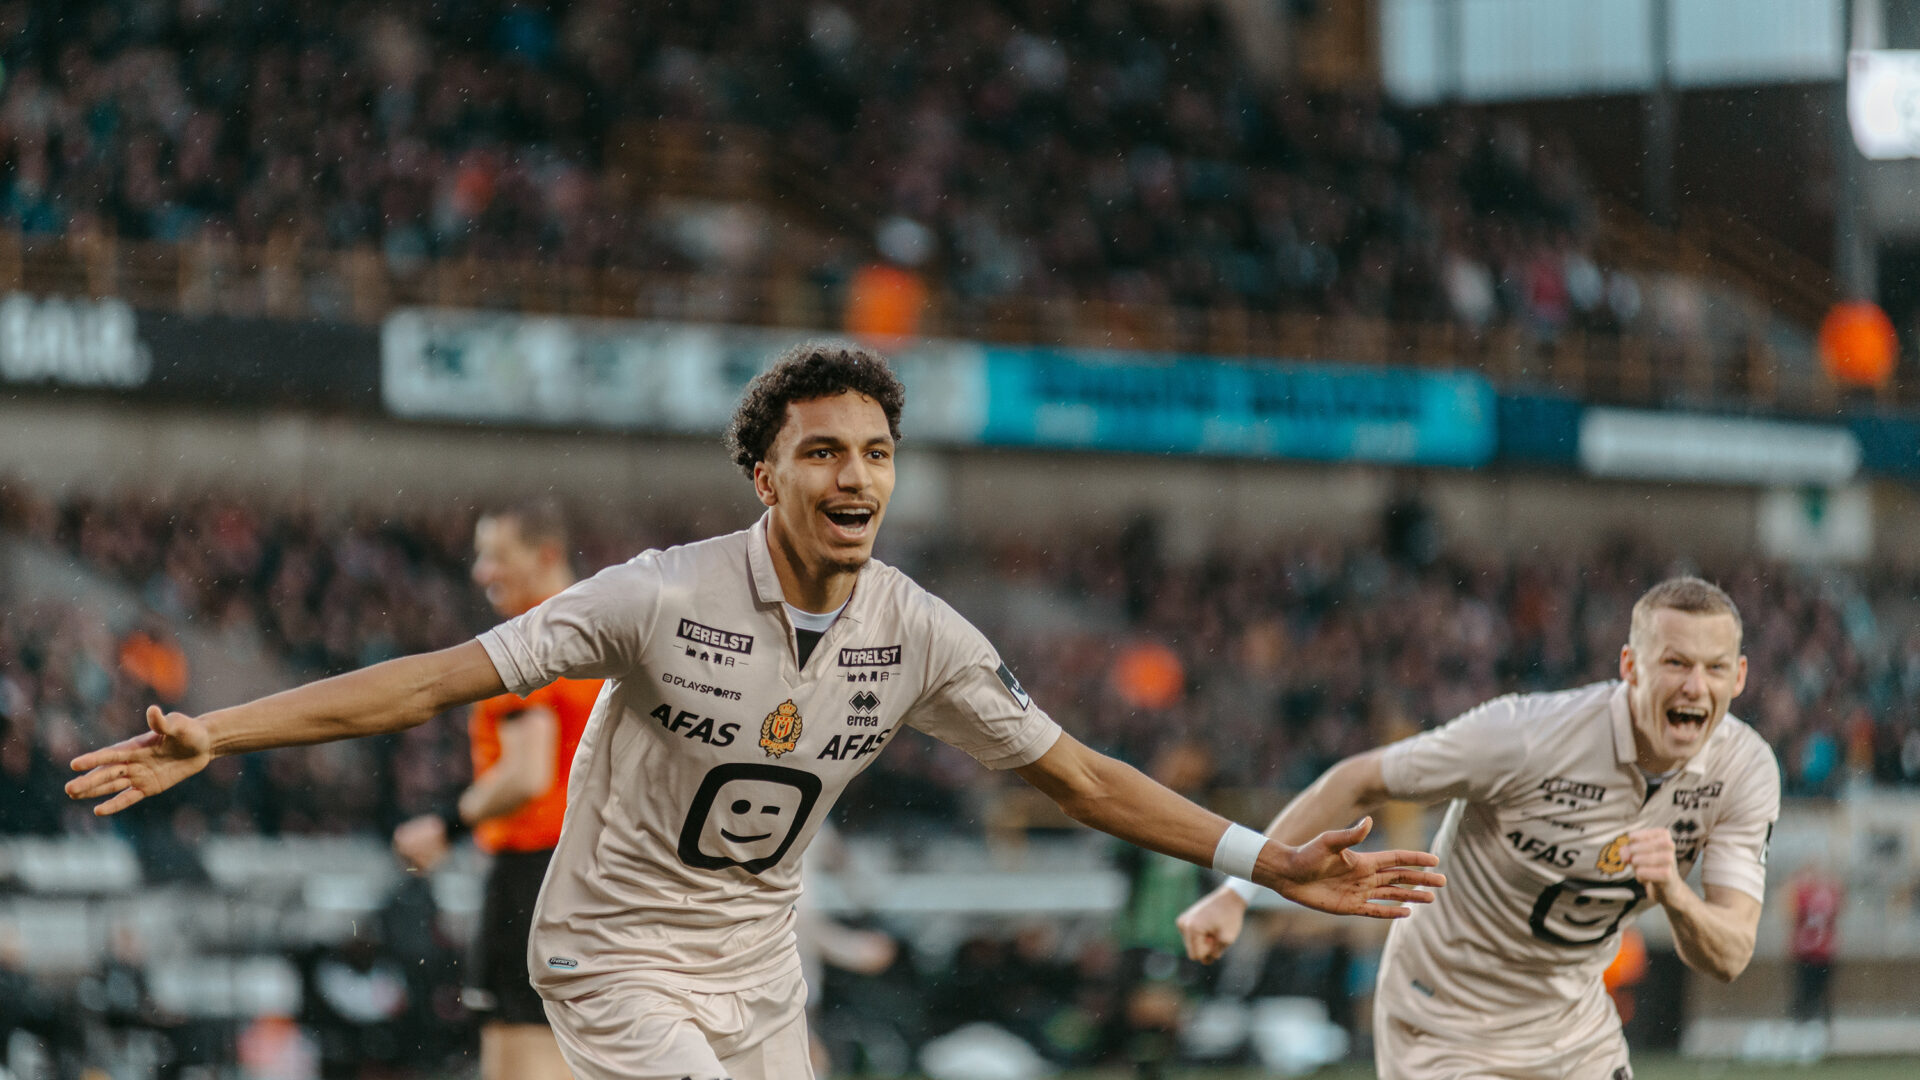 Bilal Bafdili from KV Mechelen celebrating after scoring a goal